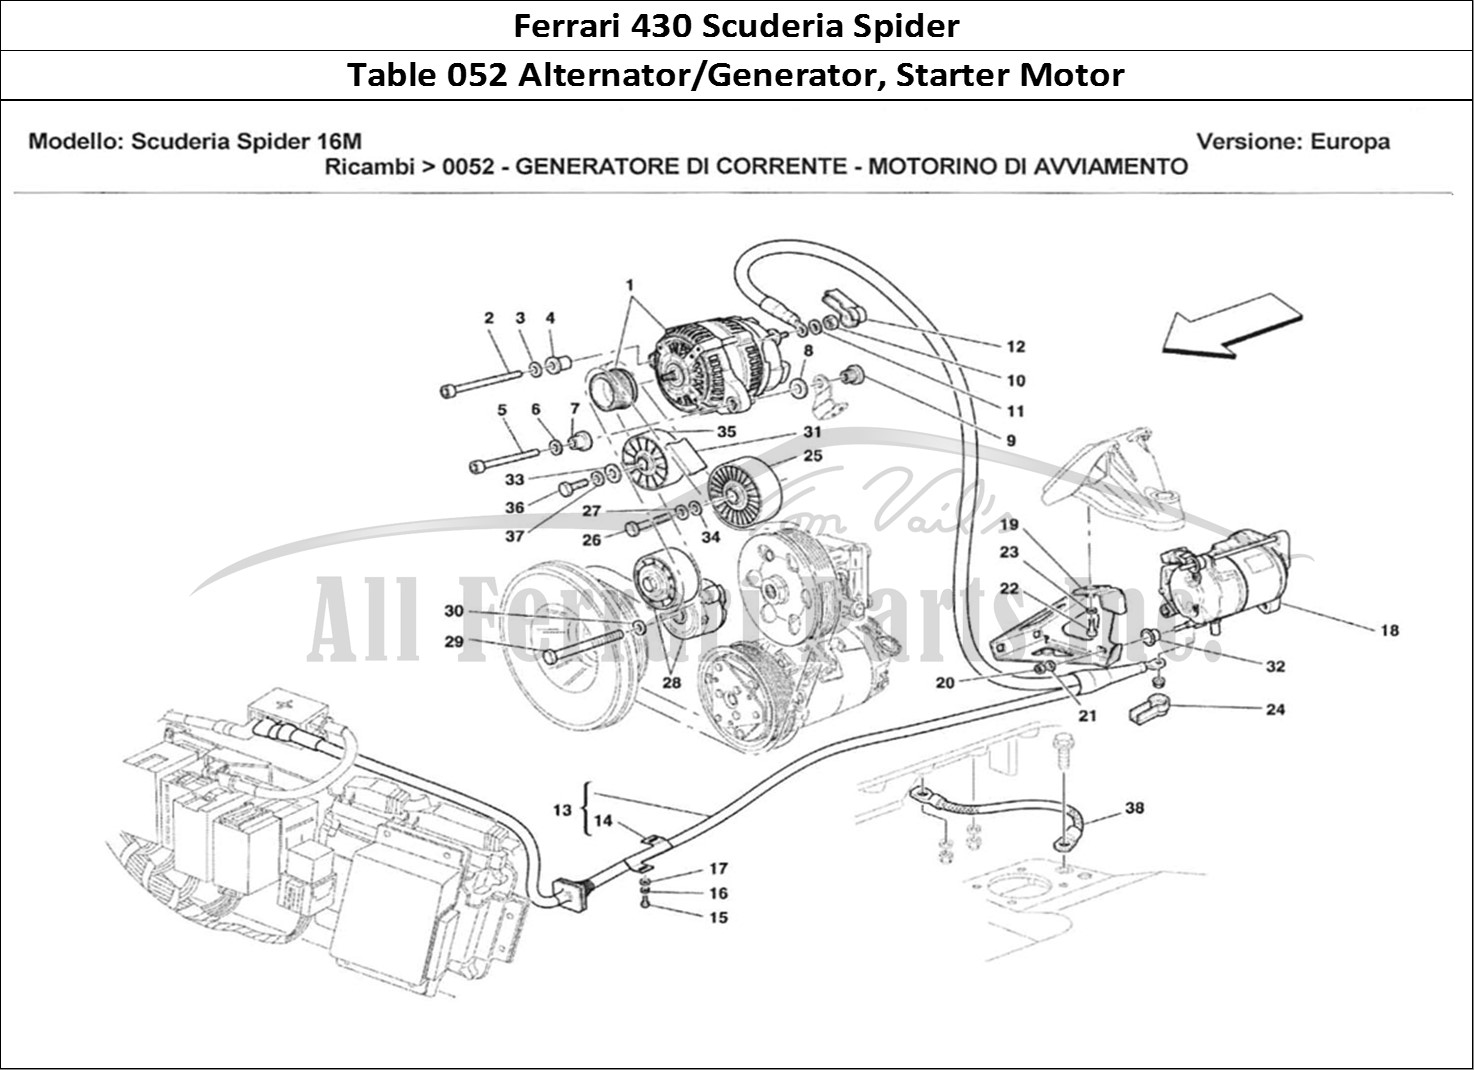 Ferrari Parts Ferrari 430 Scuderia Spider 16M Page 052 Generatore di Corrente -